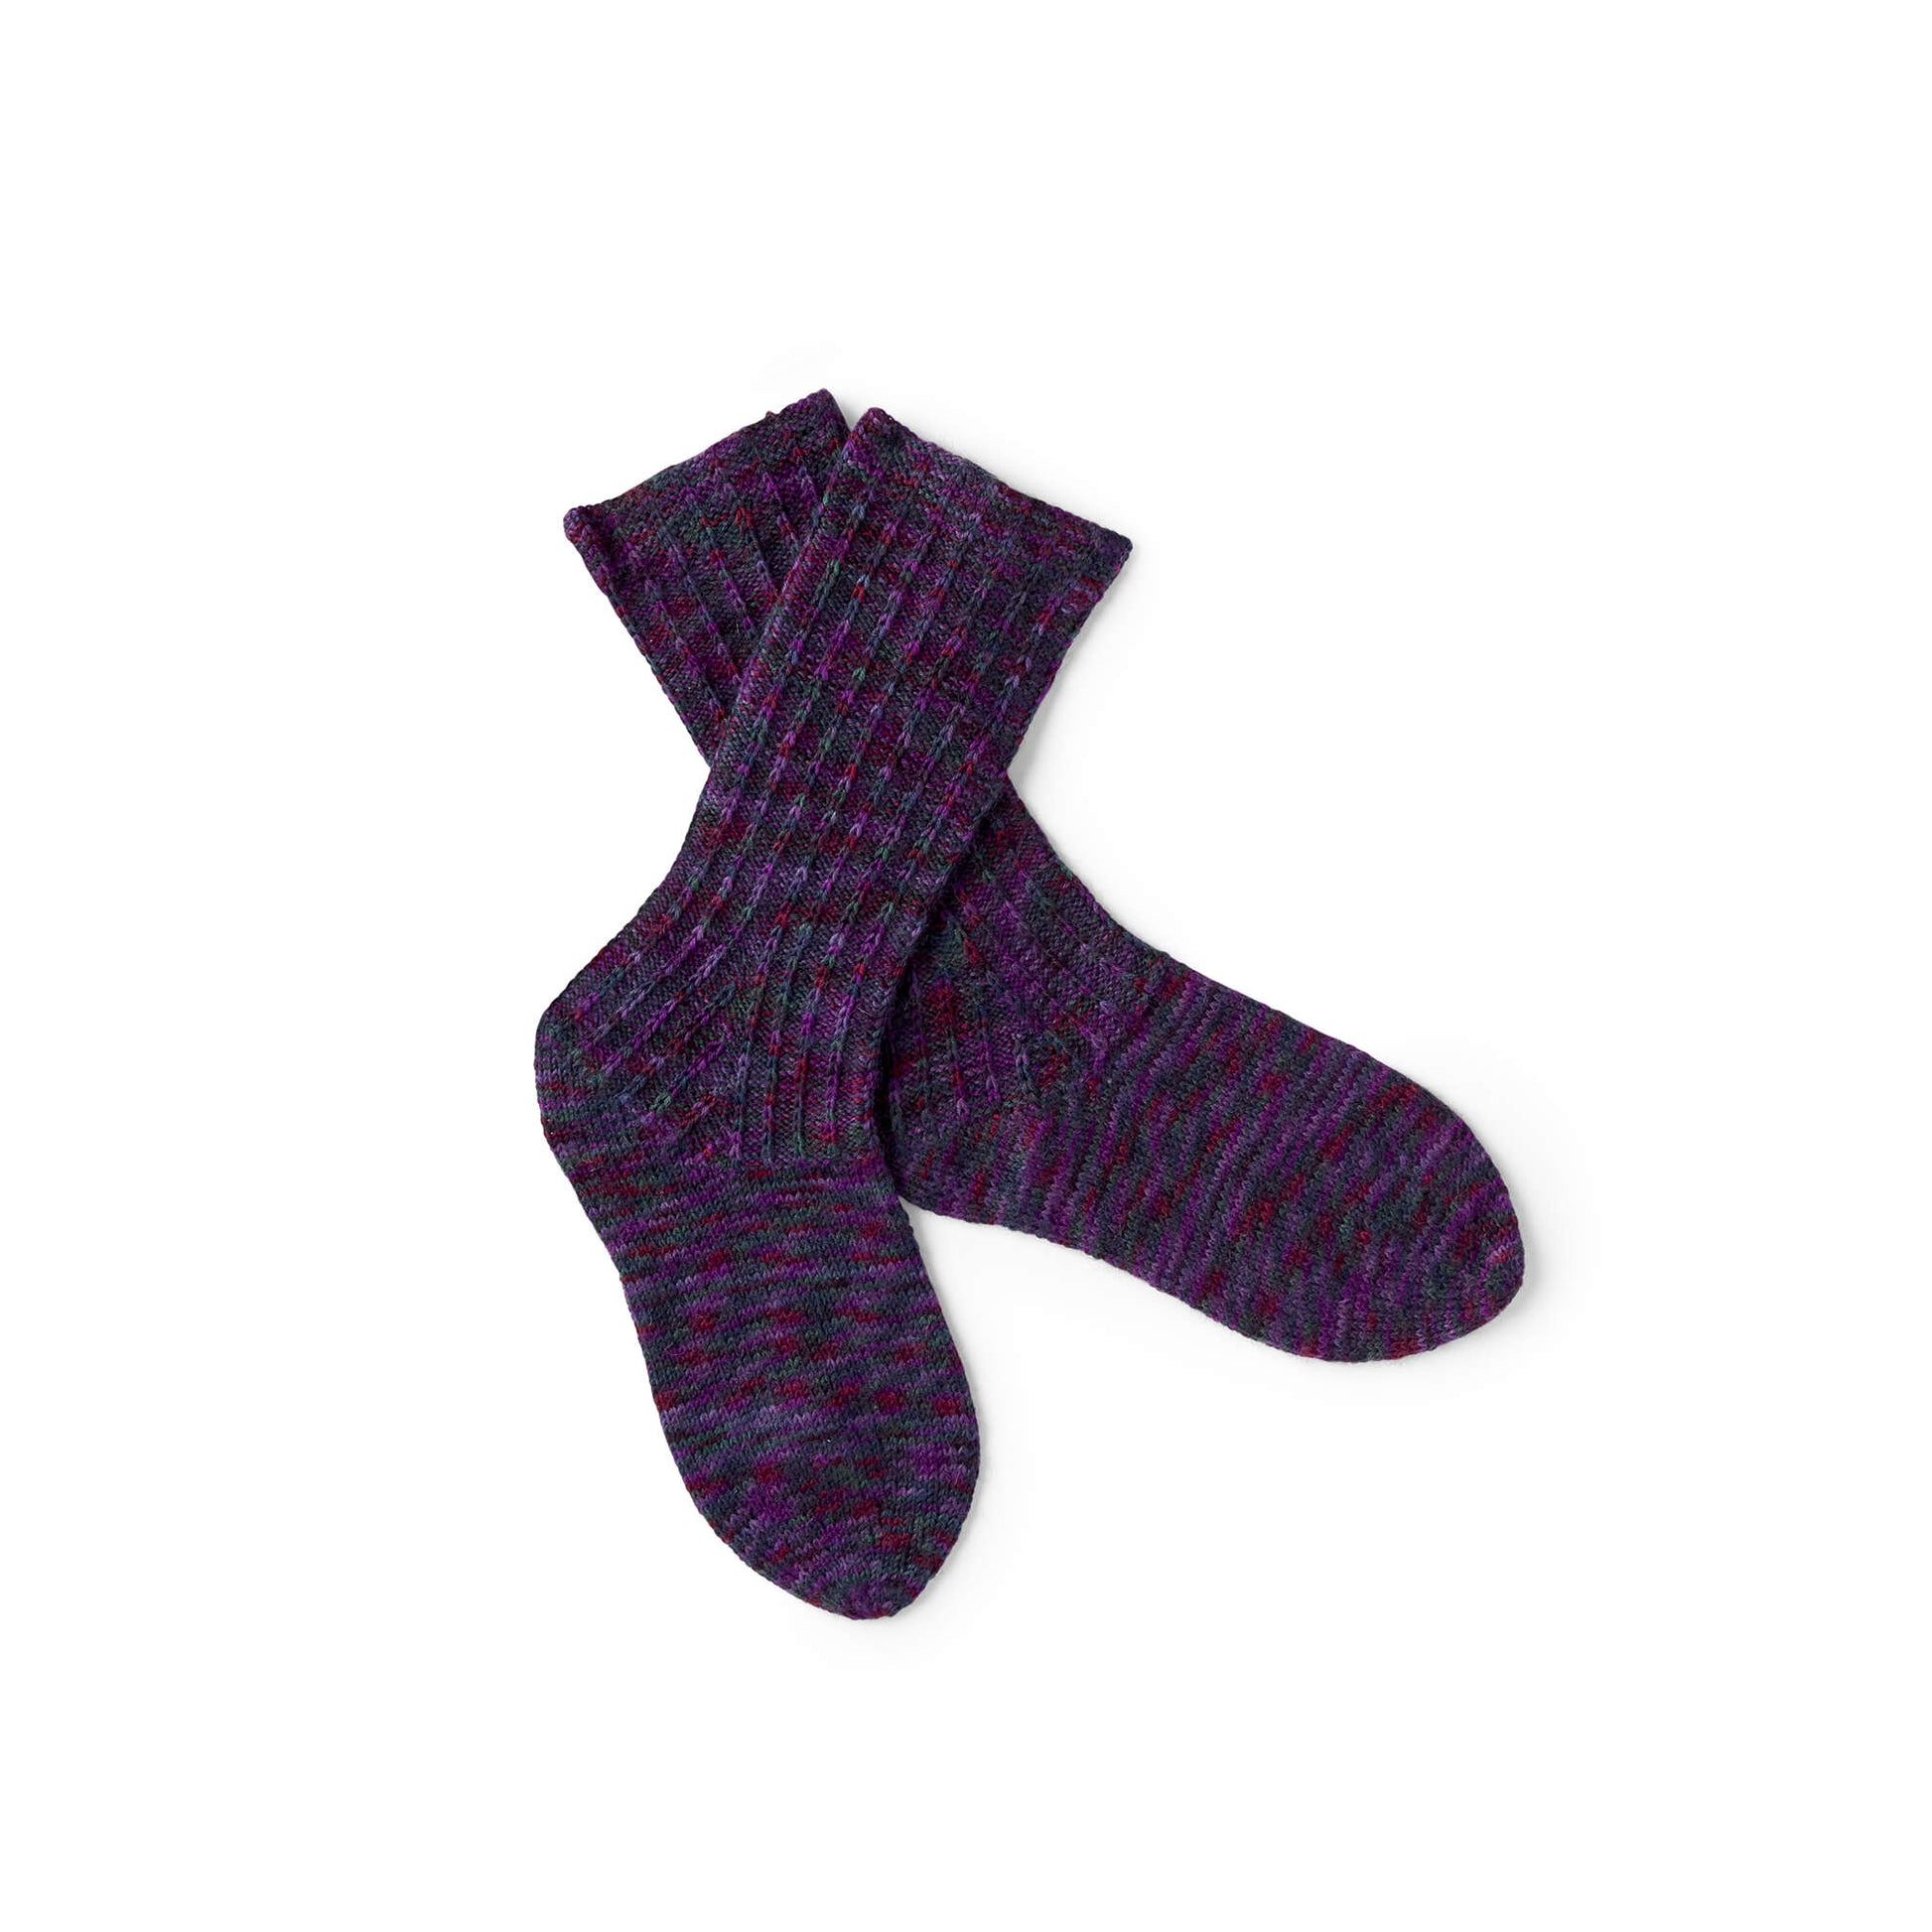 Free Red Heart Knit Slip Rib Socks Pattern